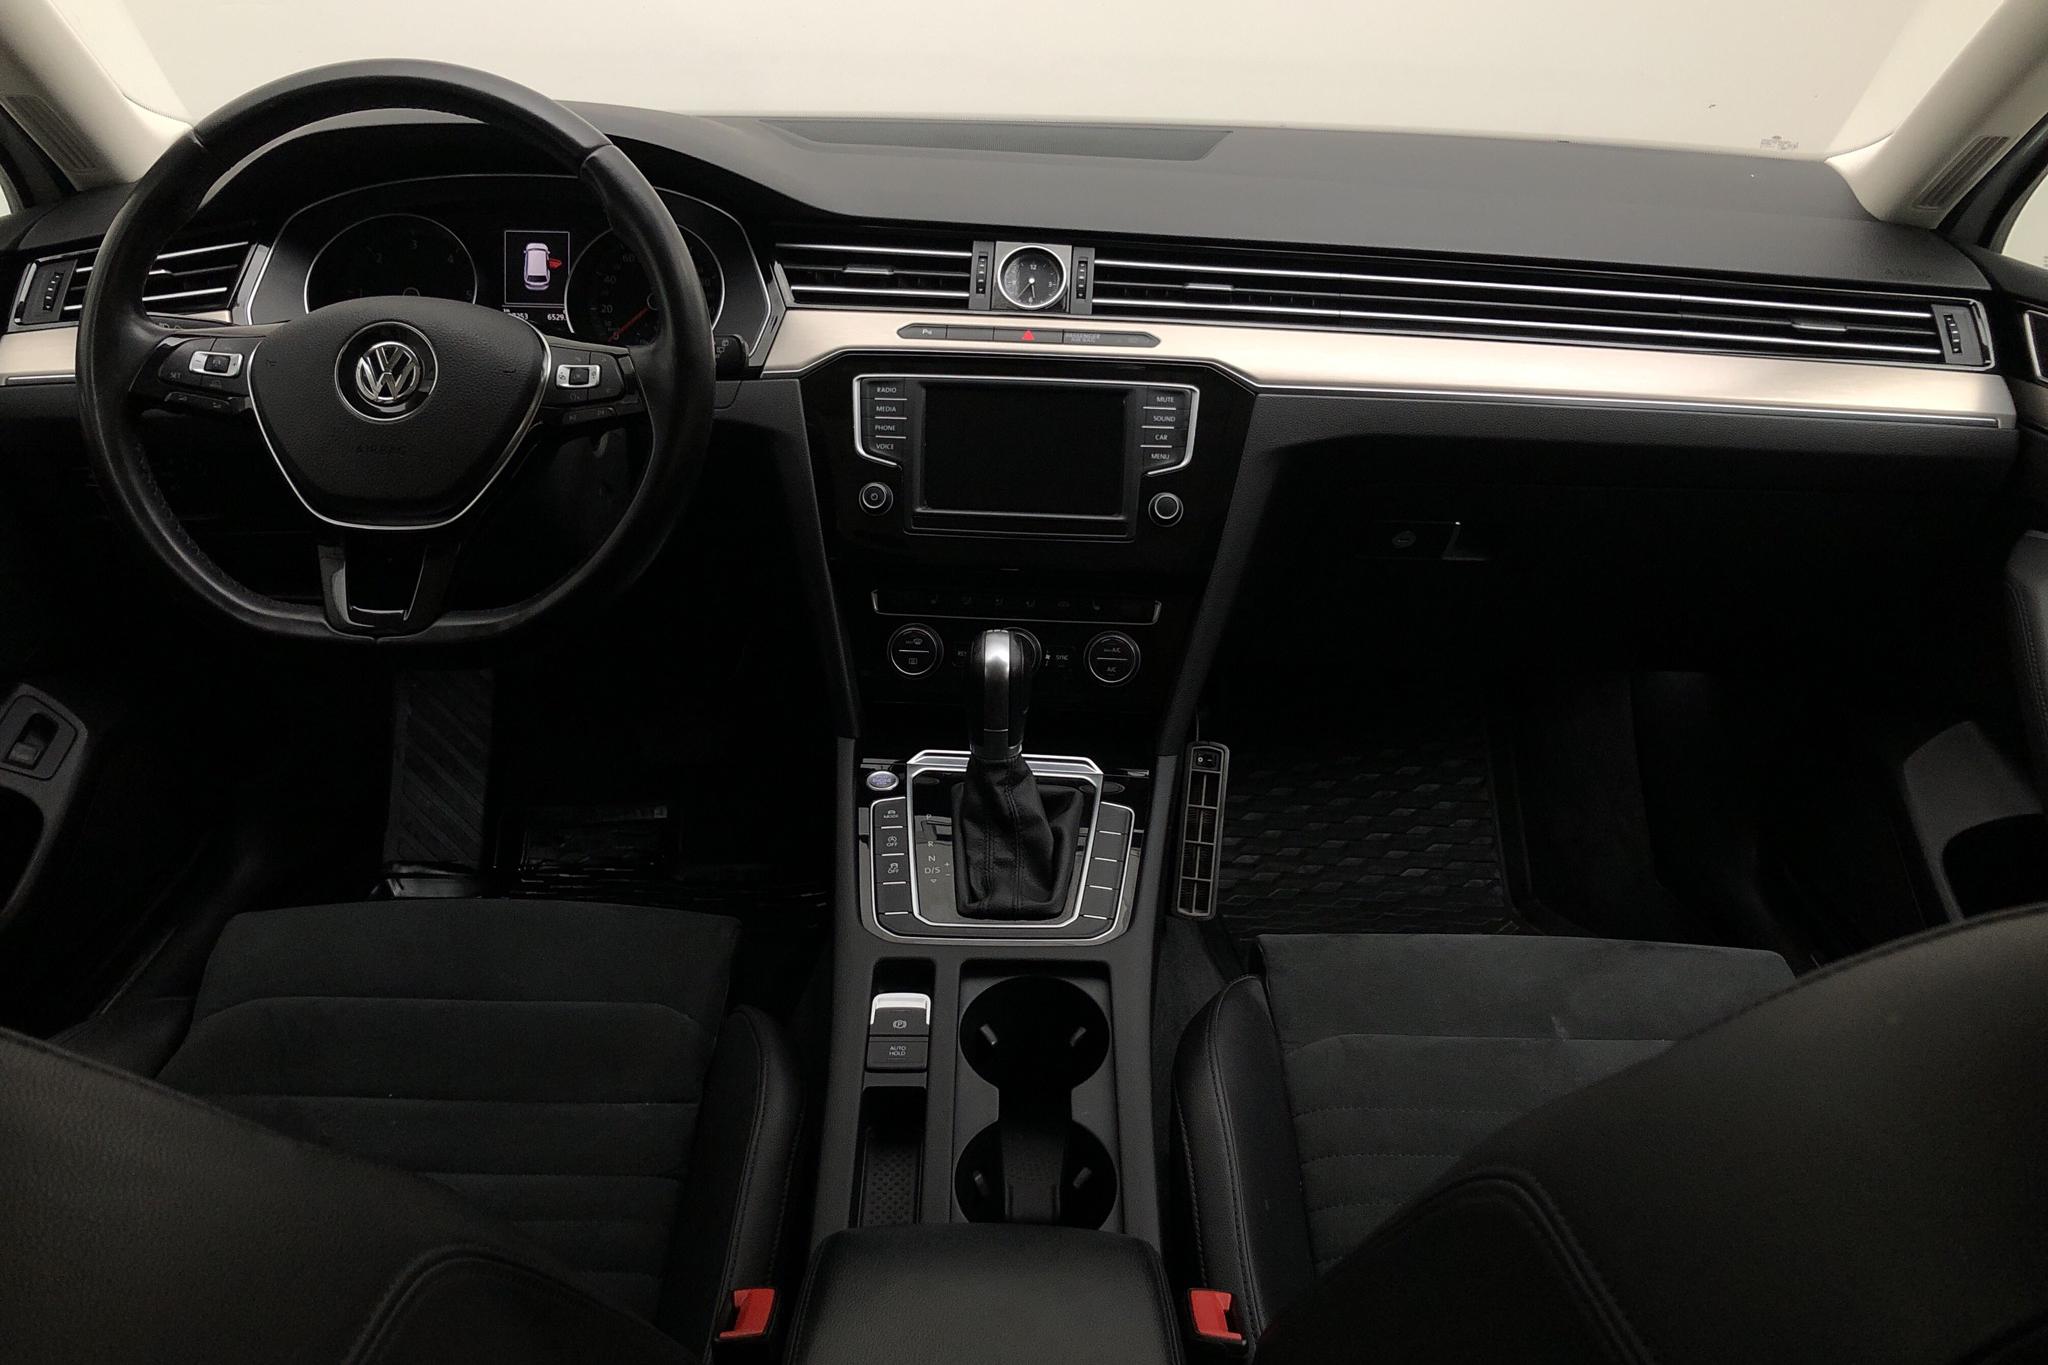 VW Passat 2.0 TDI Sportscombi (190hk) - 10 726 mil - Automat - vit - 2016